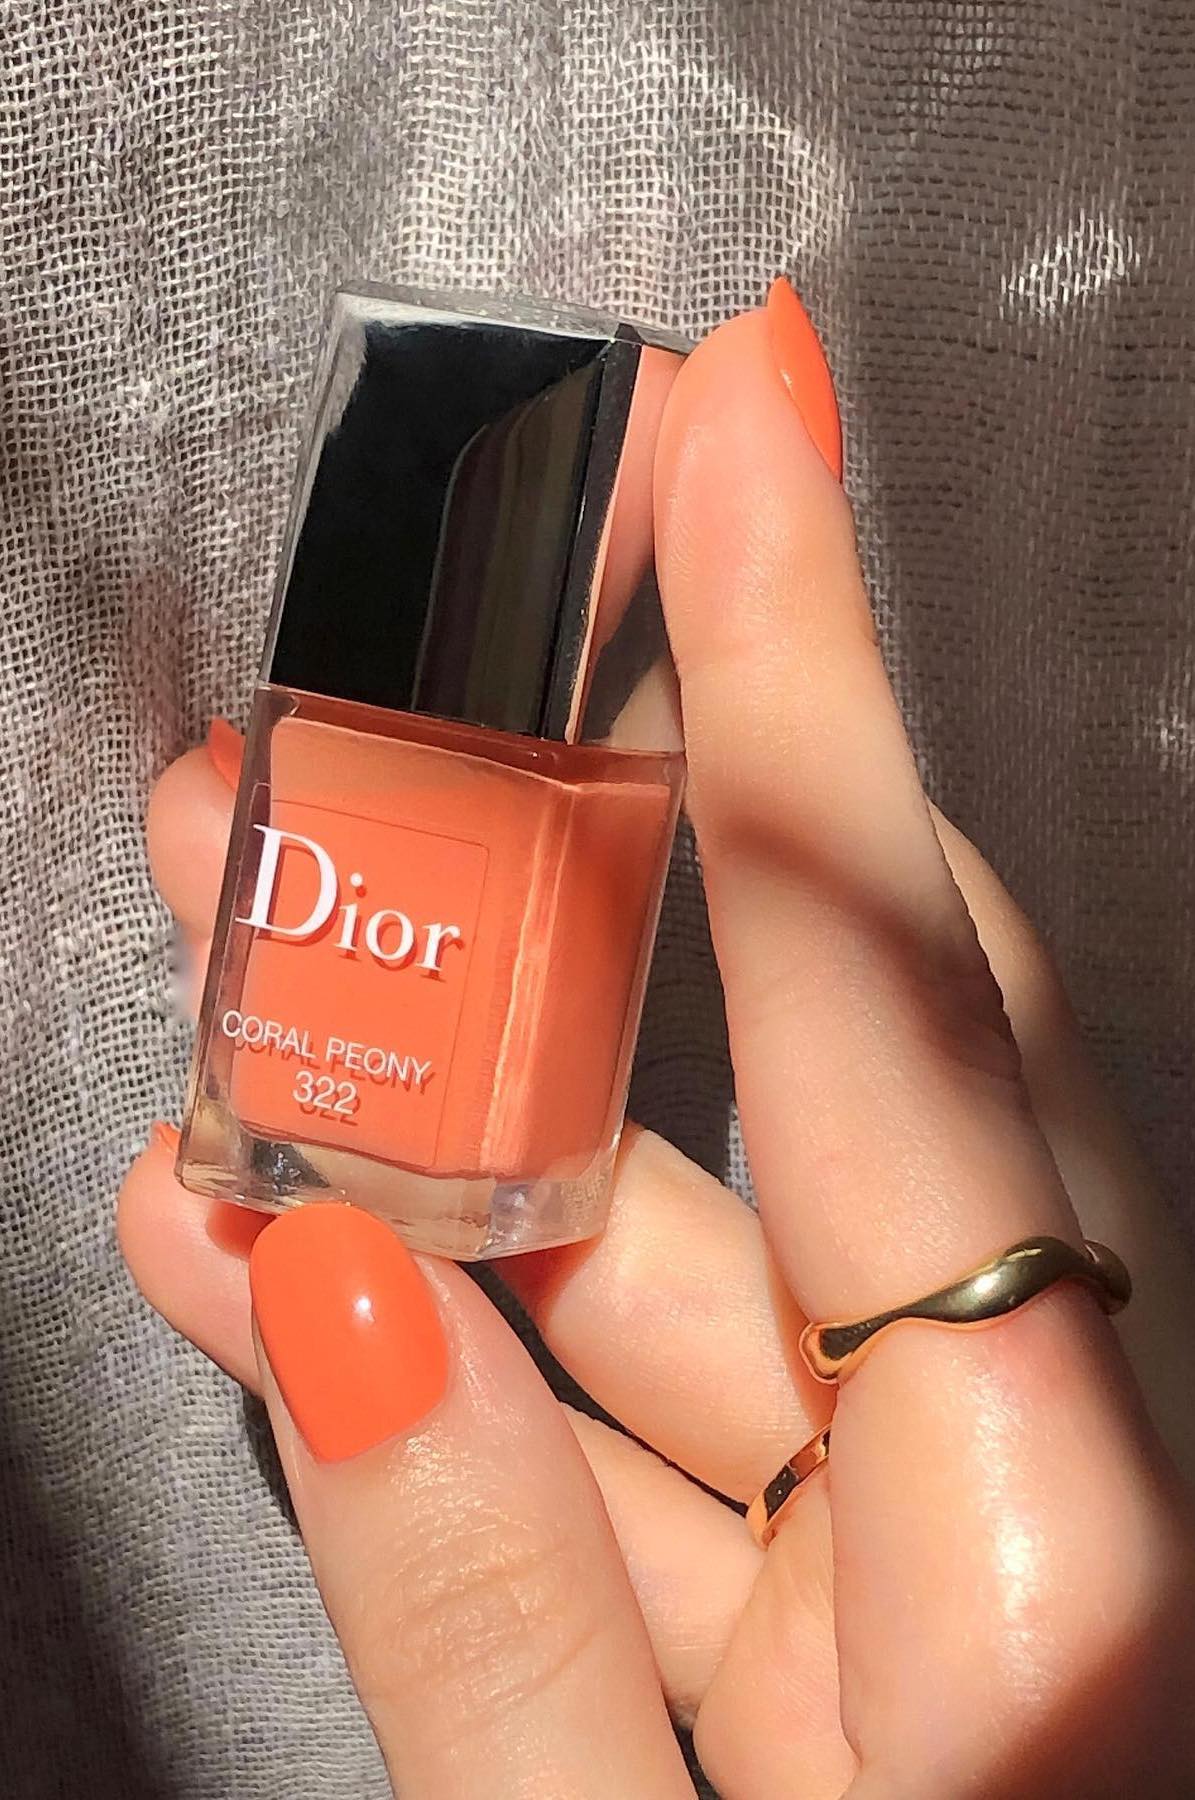 Dior nail polish review Coral Peony pink_oblivion